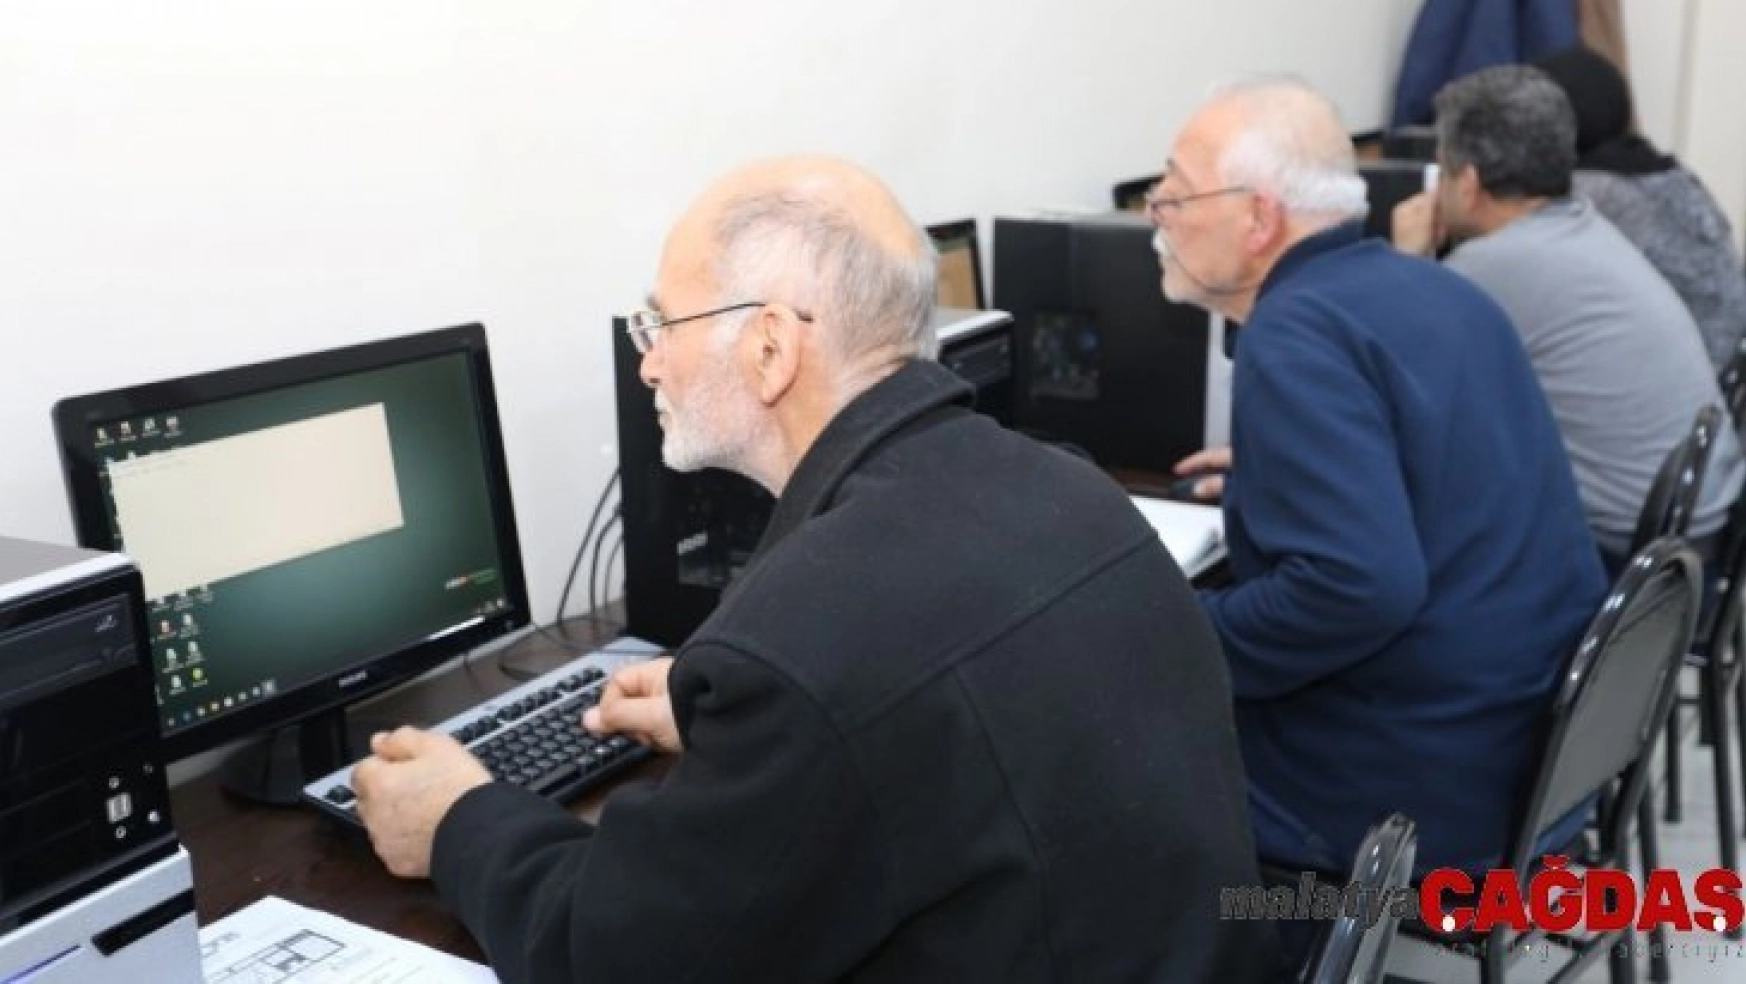 KO-MEK'ten 50 yaş ve üstü vatandaşlara bilgisayar eğitimi